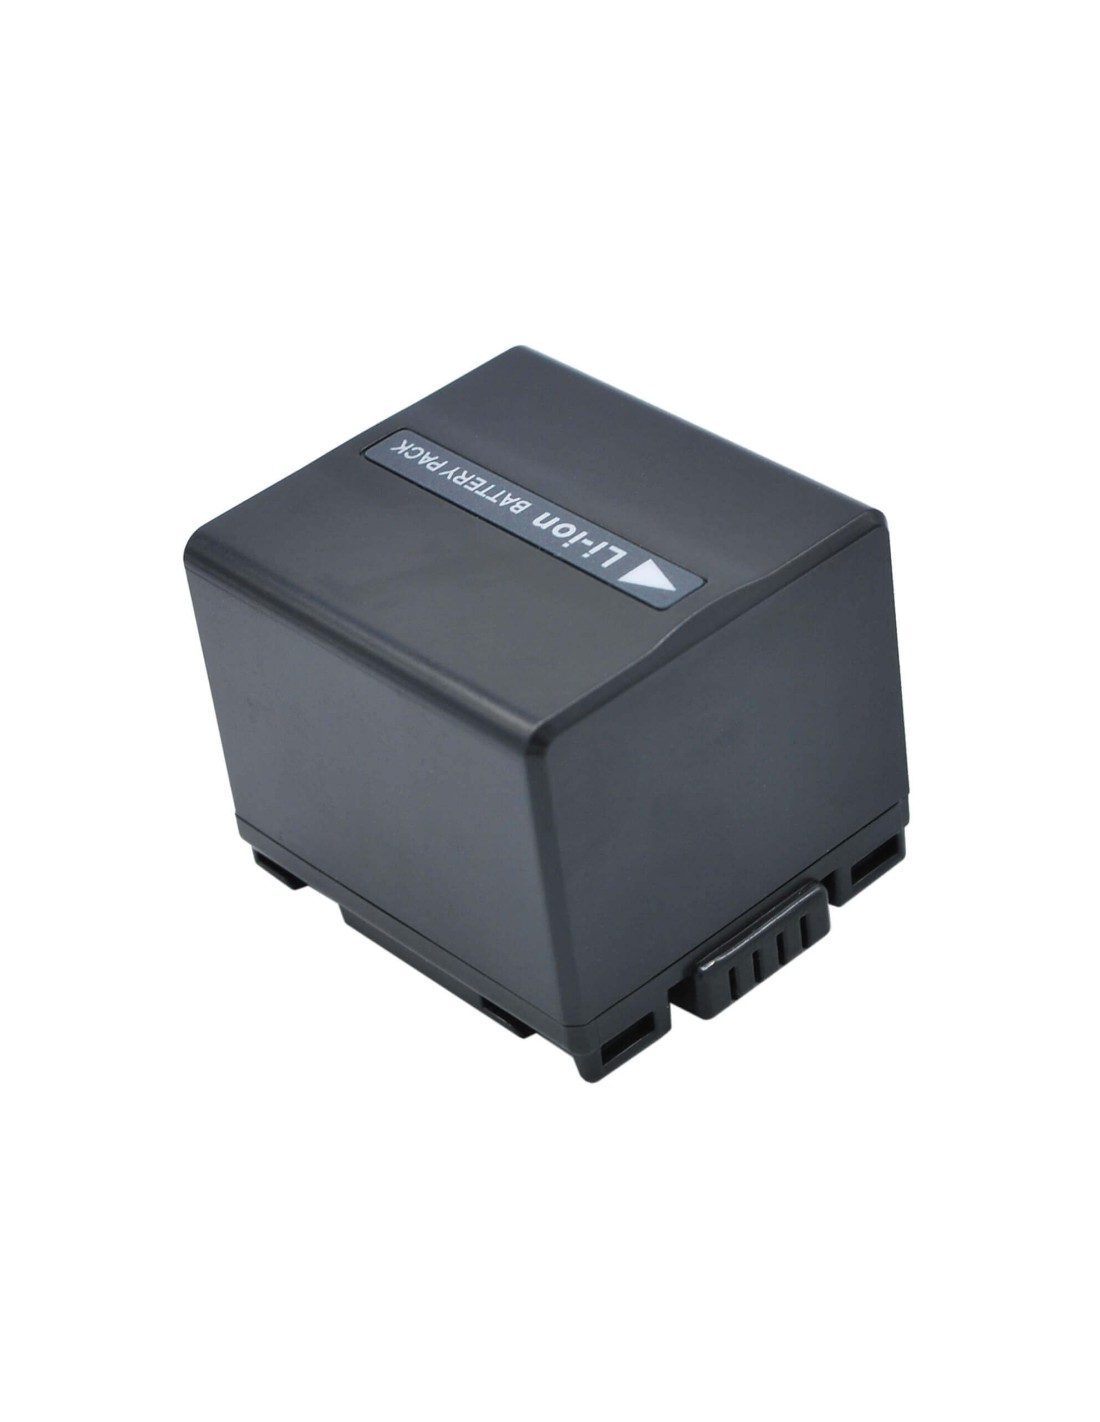 Battery for Hitachi Dz-bd70, Dz-bd7h, Dz-bx37e, Dz-gx20, 7.4V, 1440mAh -  10.66Wh